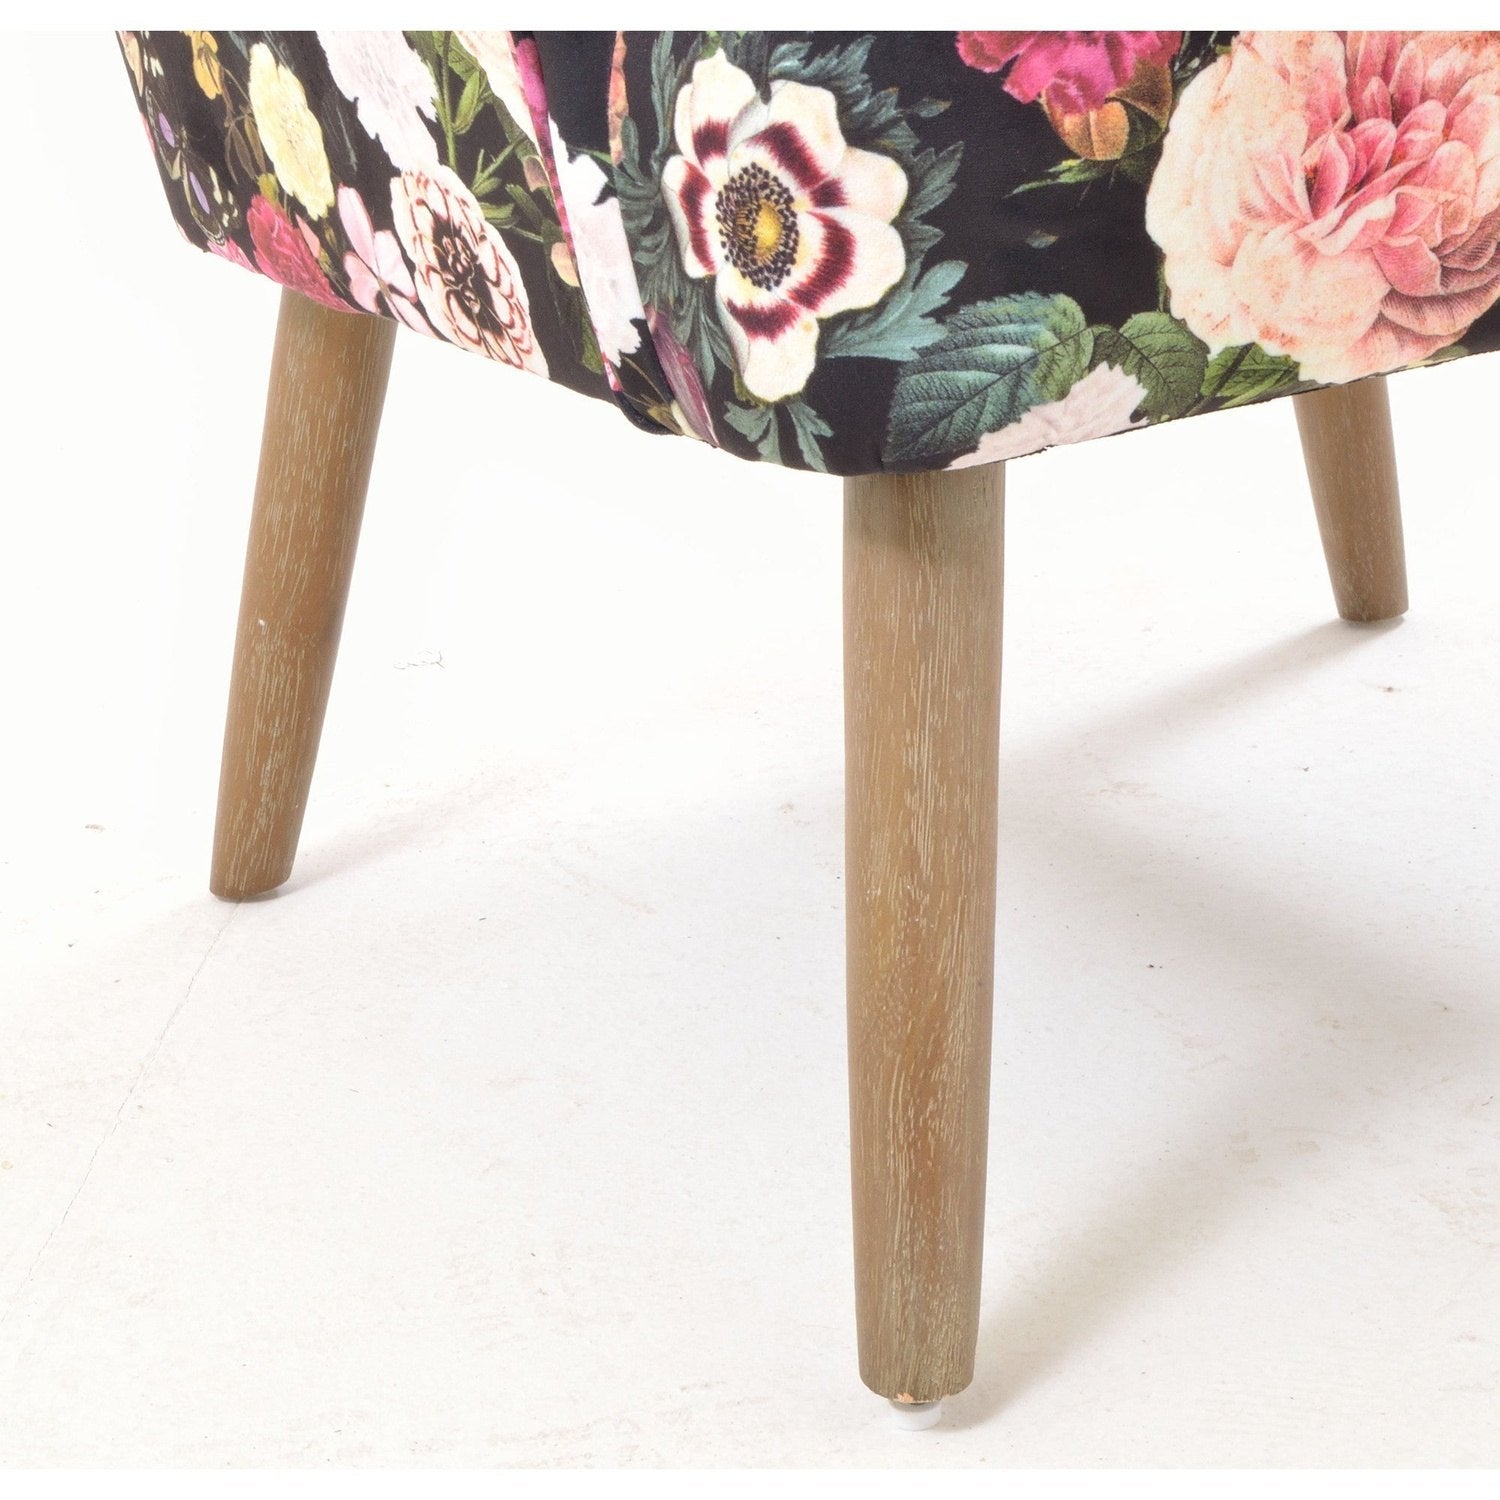 Cromarty Shannon Chair - Floral Velvet